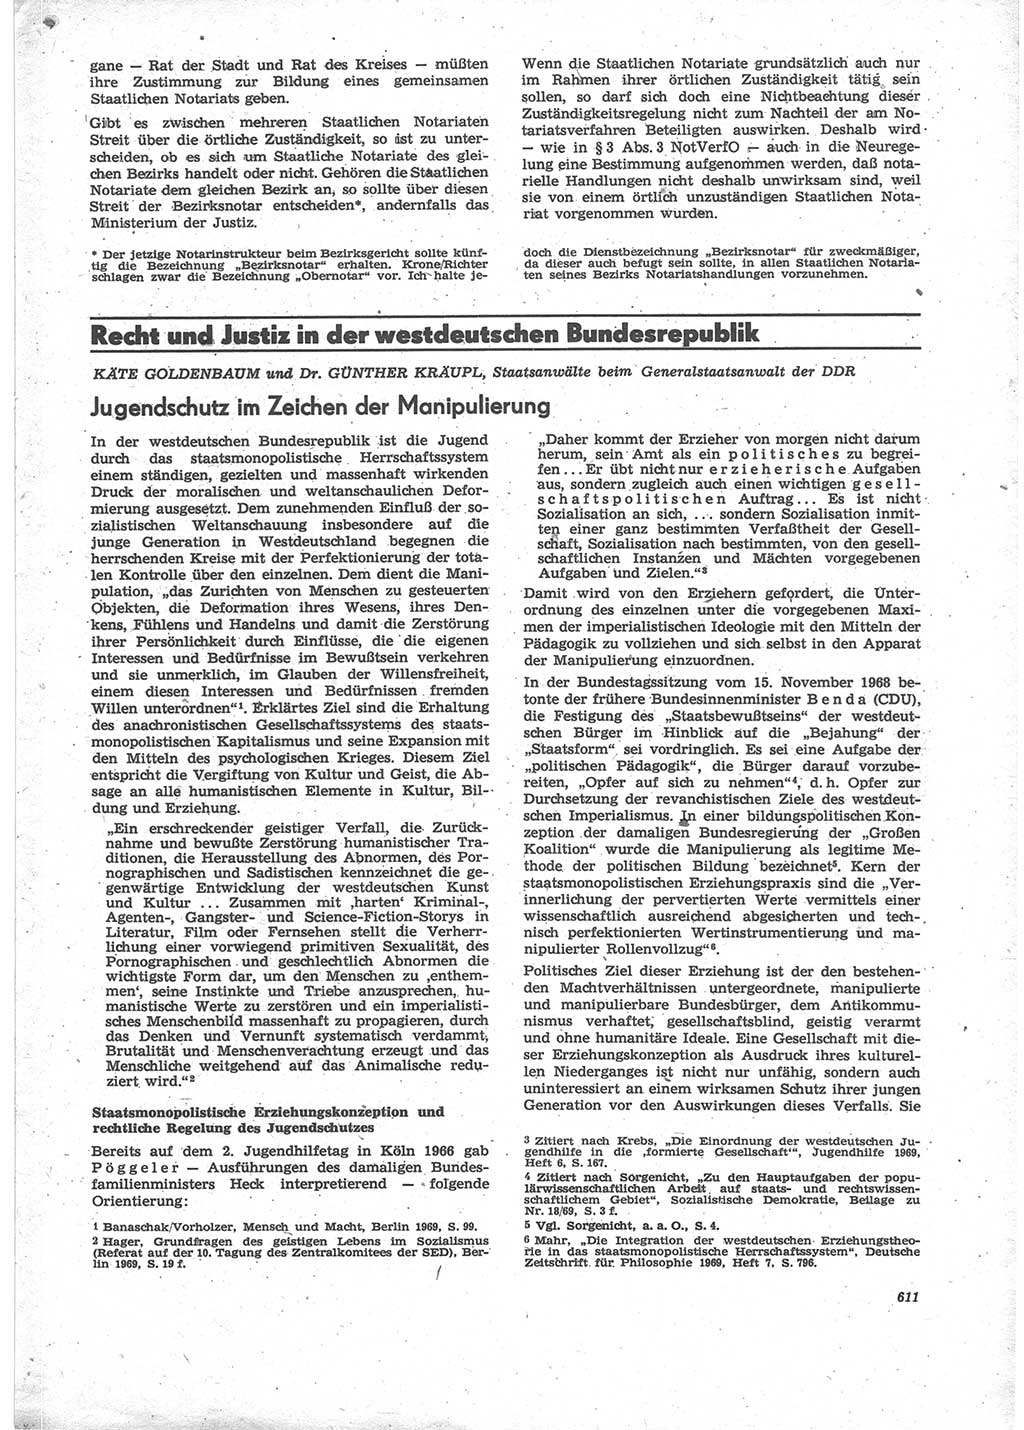 Neue Justiz (NJ), Zeitschrift für Recht und Rechtswissenschaft [Deutsche Demokratische Republik (DDR)], 24. Jahrgang 1970, Seite 611 (NJ DDR 1970, S. 611)